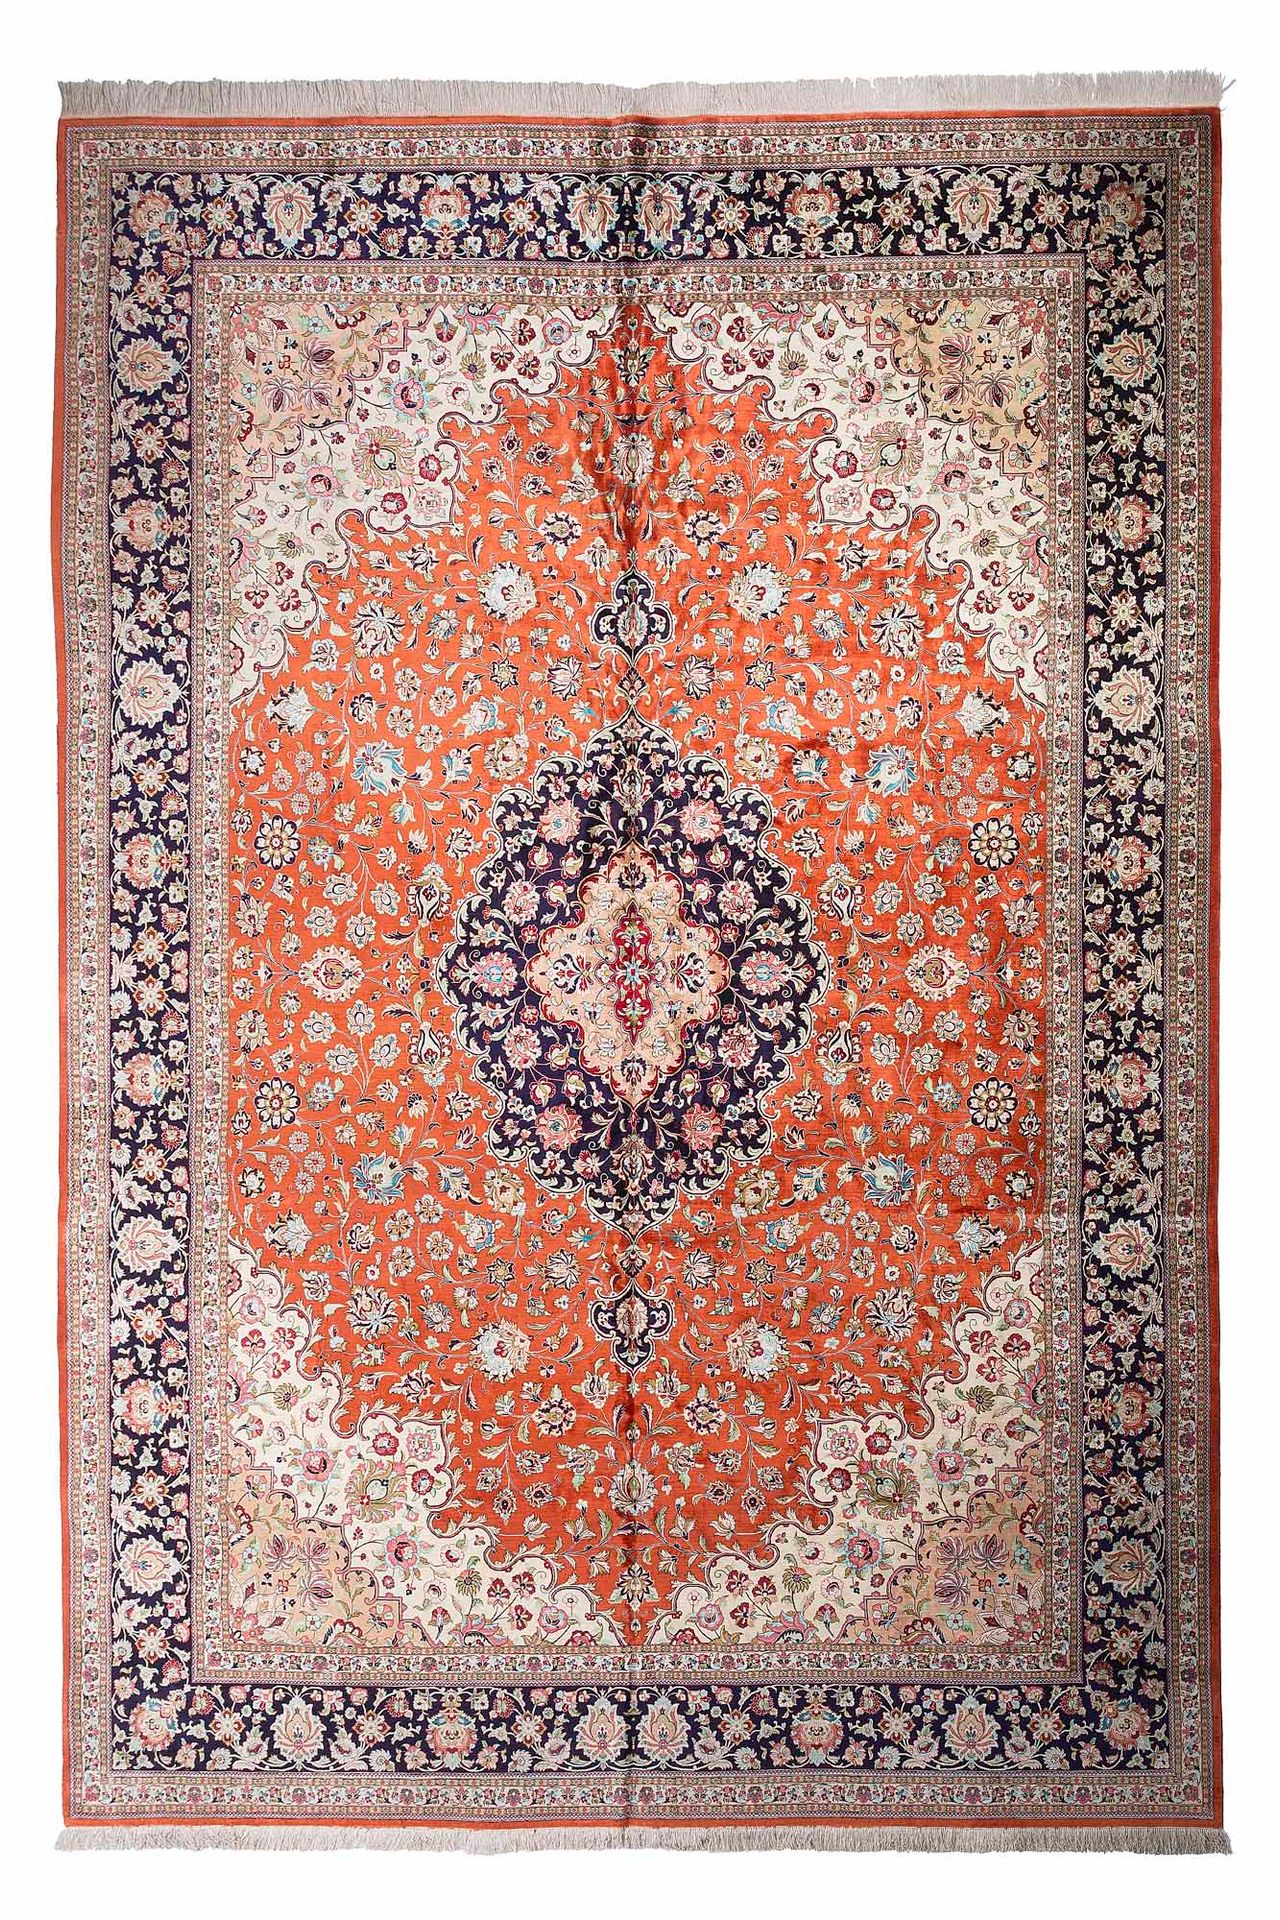 Null Important silk GHOUM carpet (Iran), shah period, mid 20th century

Dimensio&hellip;